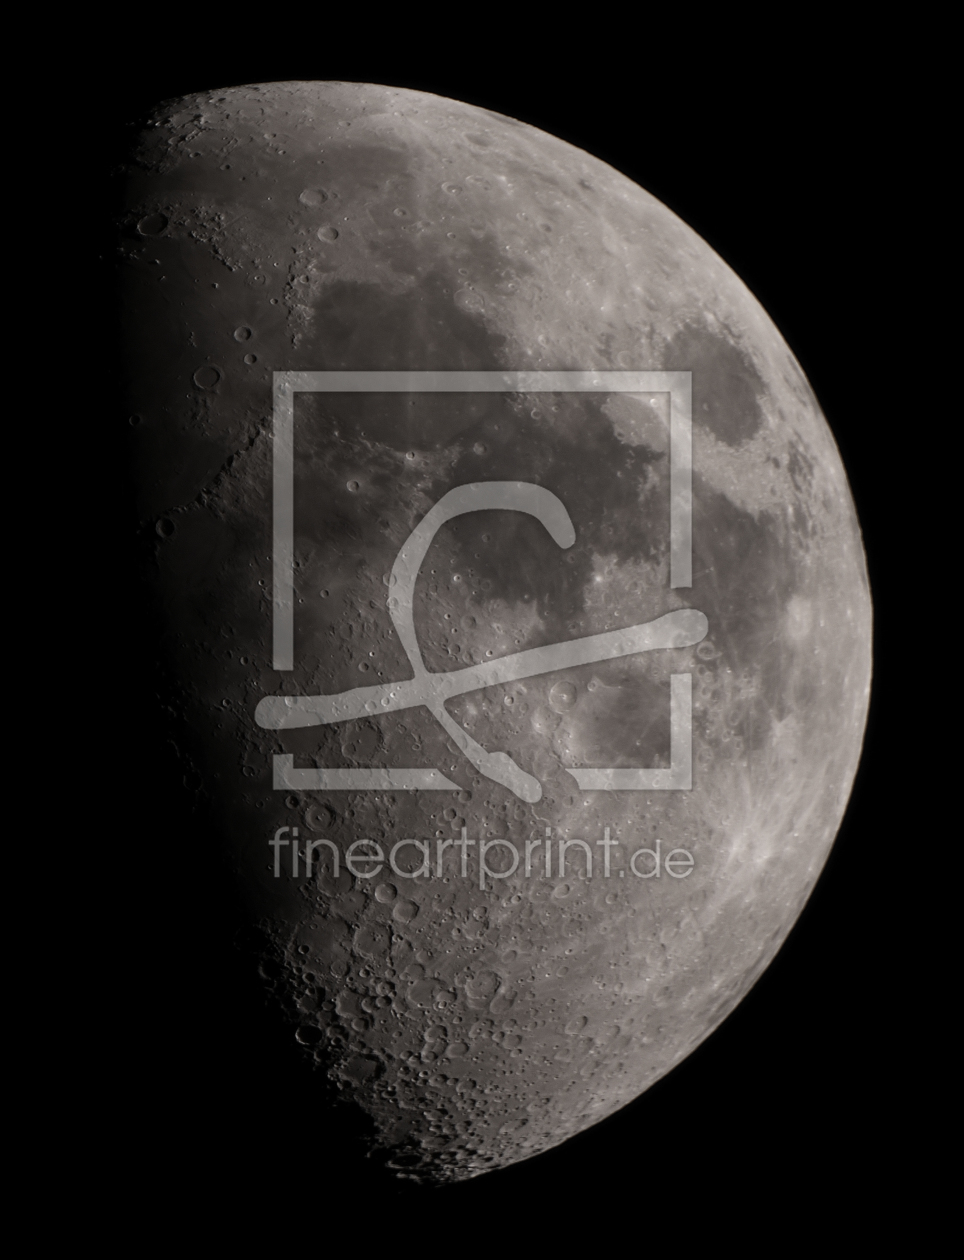 Bild-Nr.: 9957461 fly me to the moon... erstellt von NicSchumi